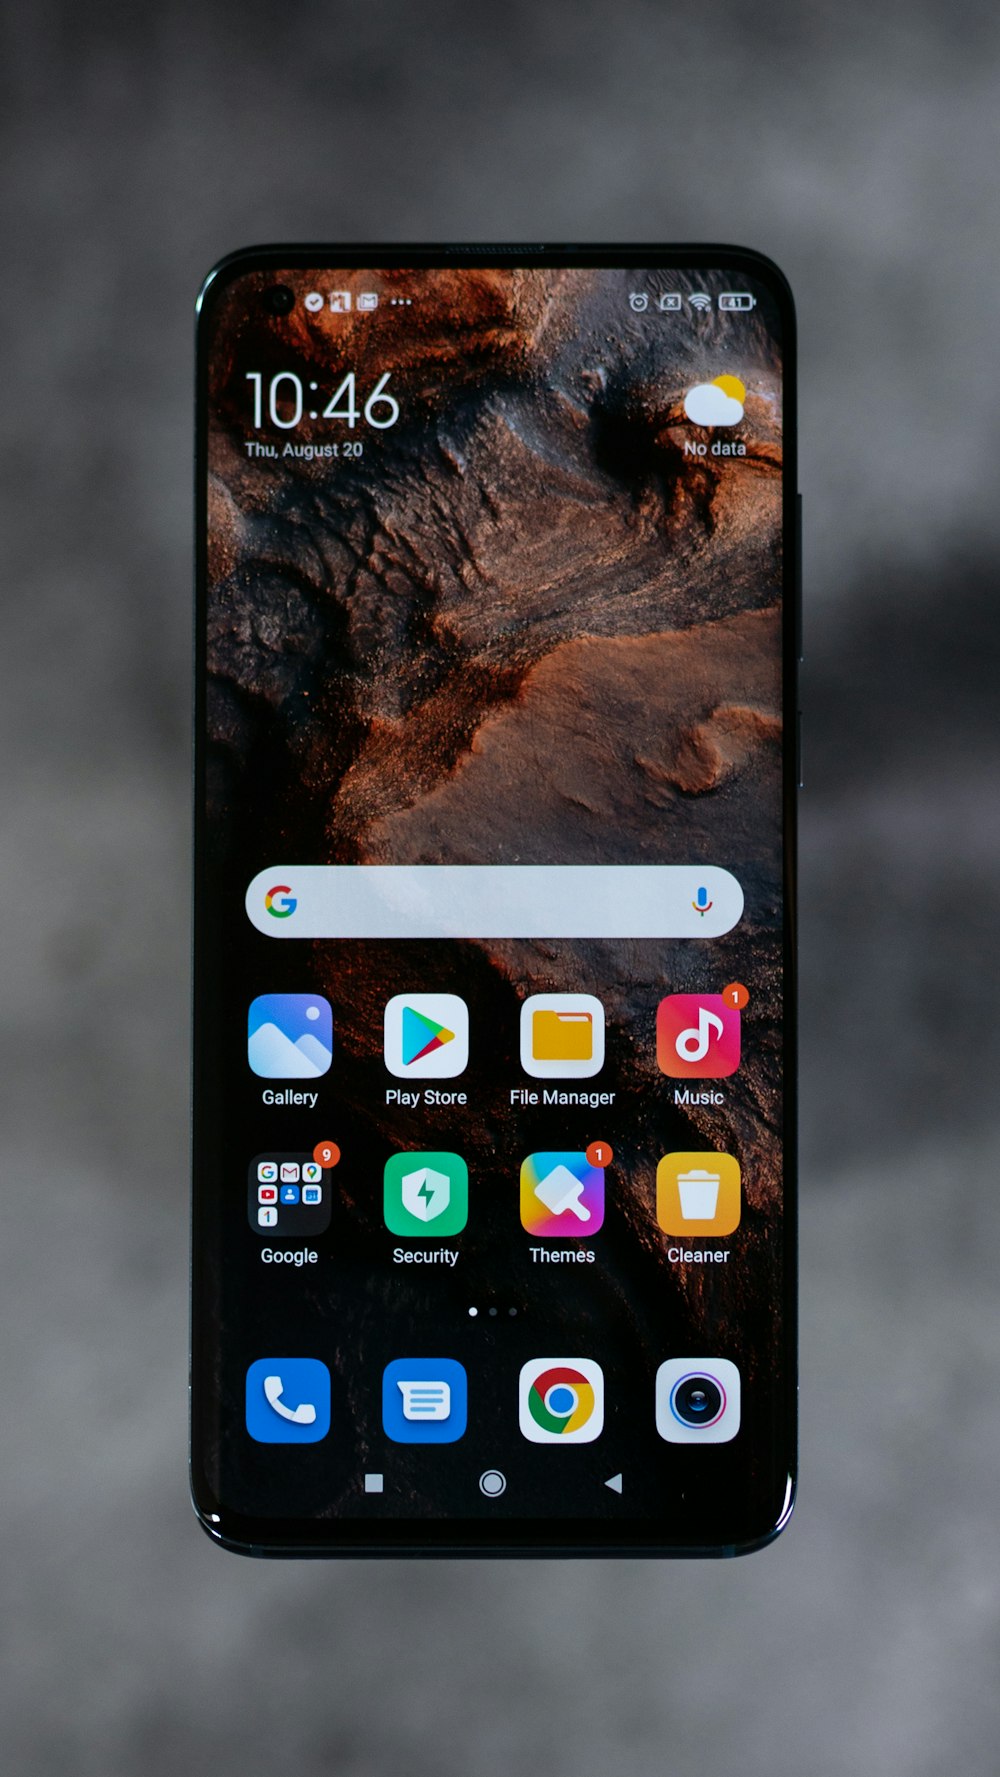 Schermo dell'iPhone che mostra le icone sullo schermo